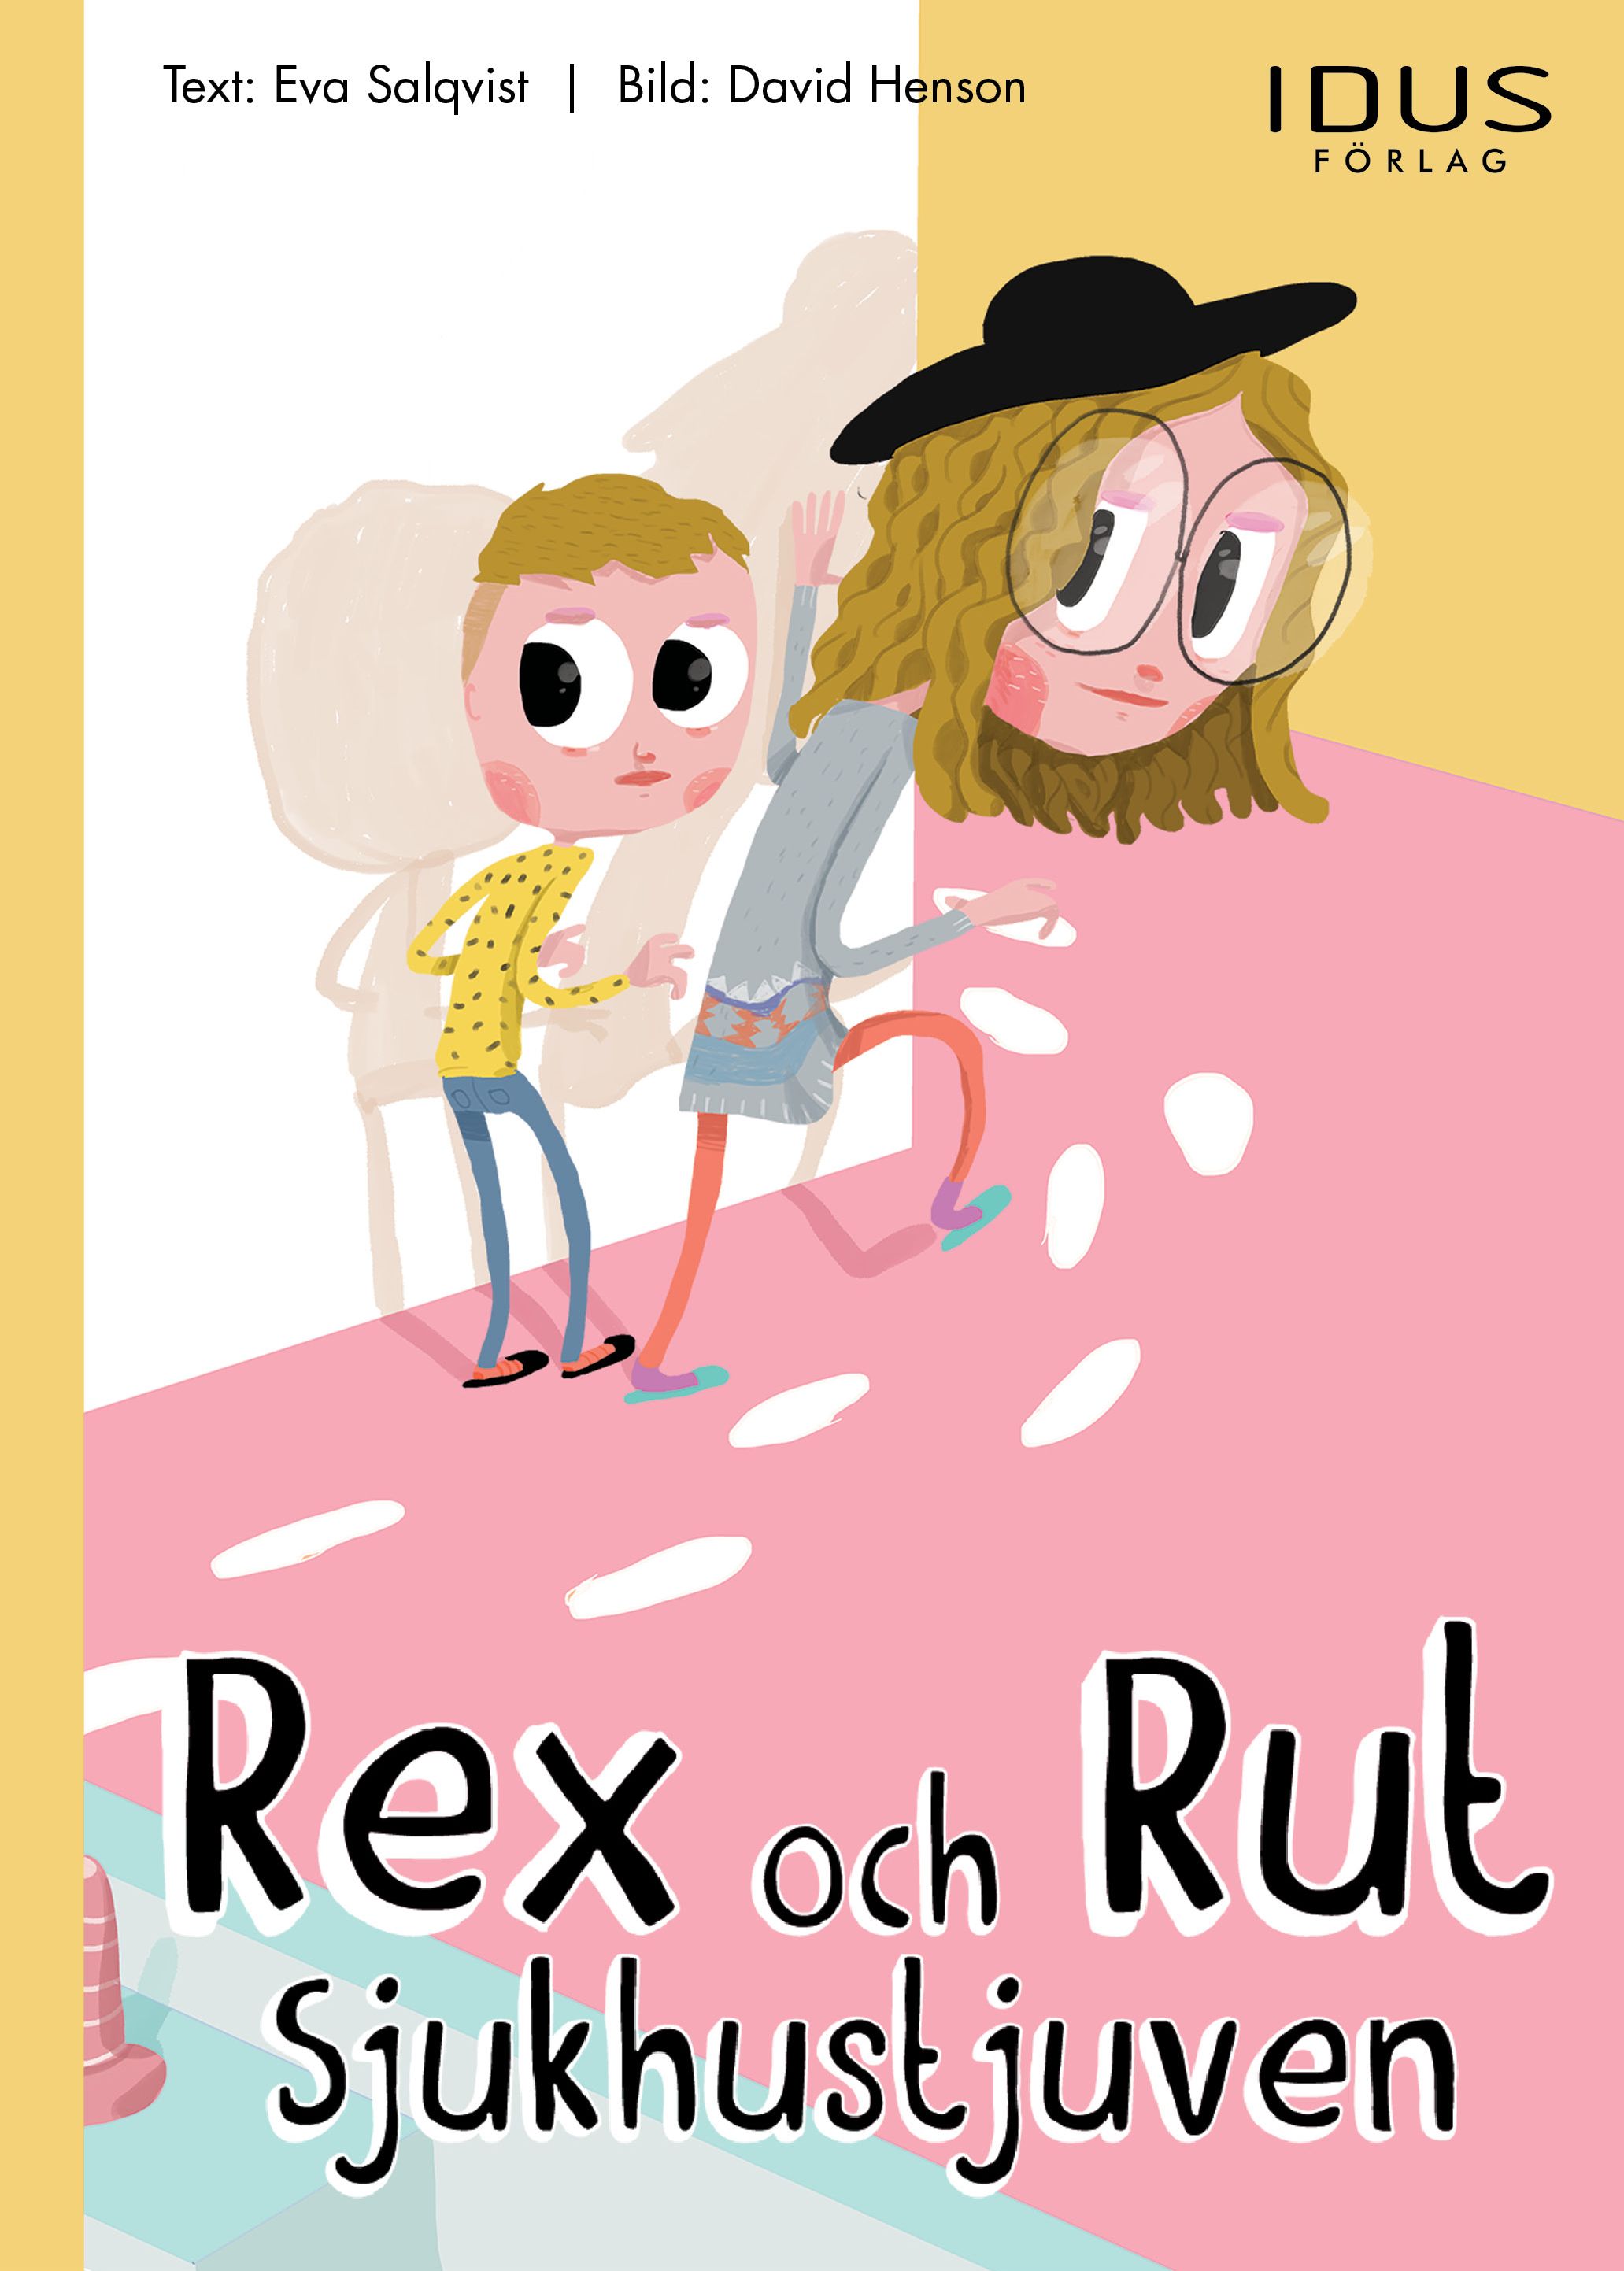 Rex och Rut - Sjukhustjuven, eBook by Eva Salqvist